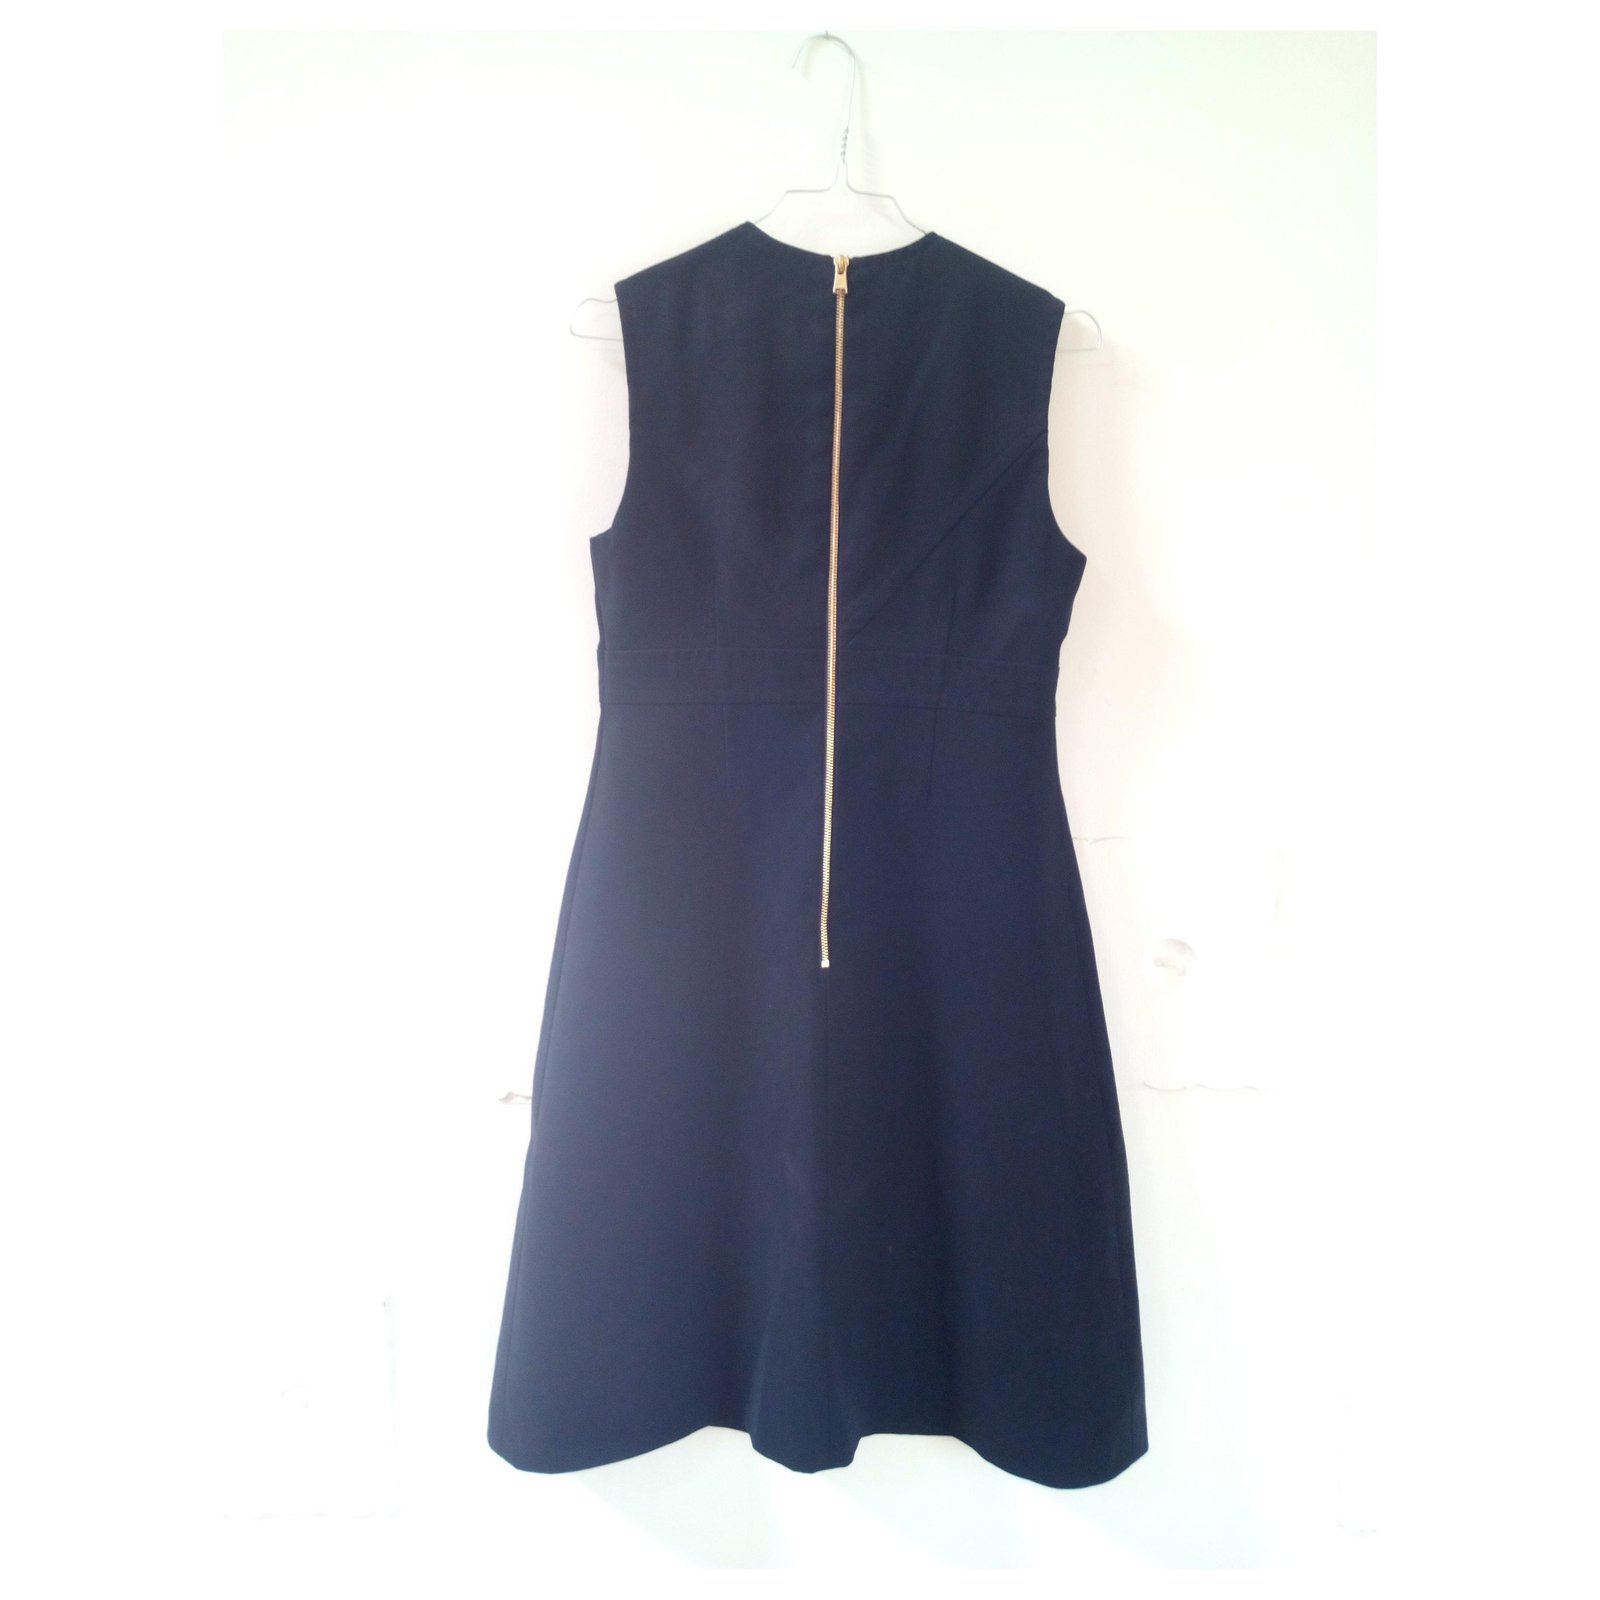 Louis Vuitton Uniform Black Sleeveless Dress F56744 EU 44 Zip Pockets ~ NWT